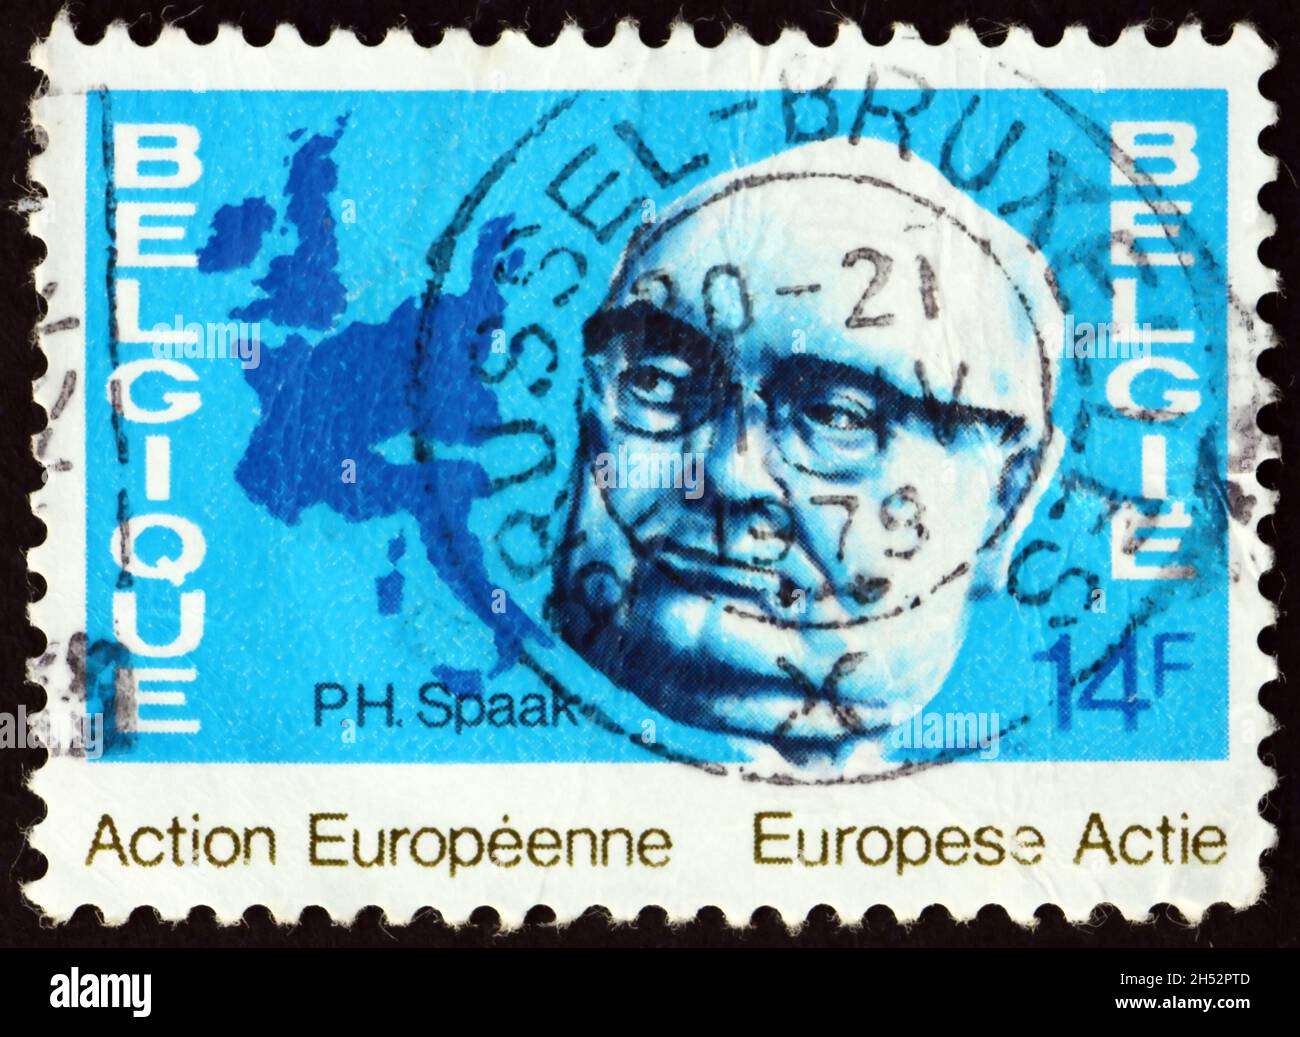 BELGIEN - UM 1978: Eine in Belgien gedruckte Briefmarke zeigt Paul Henry Spaak, belgischen Staatsmann, der für die Gründung der Europäischen Gemeinschaft gearbeitet hat, und Stockfoto